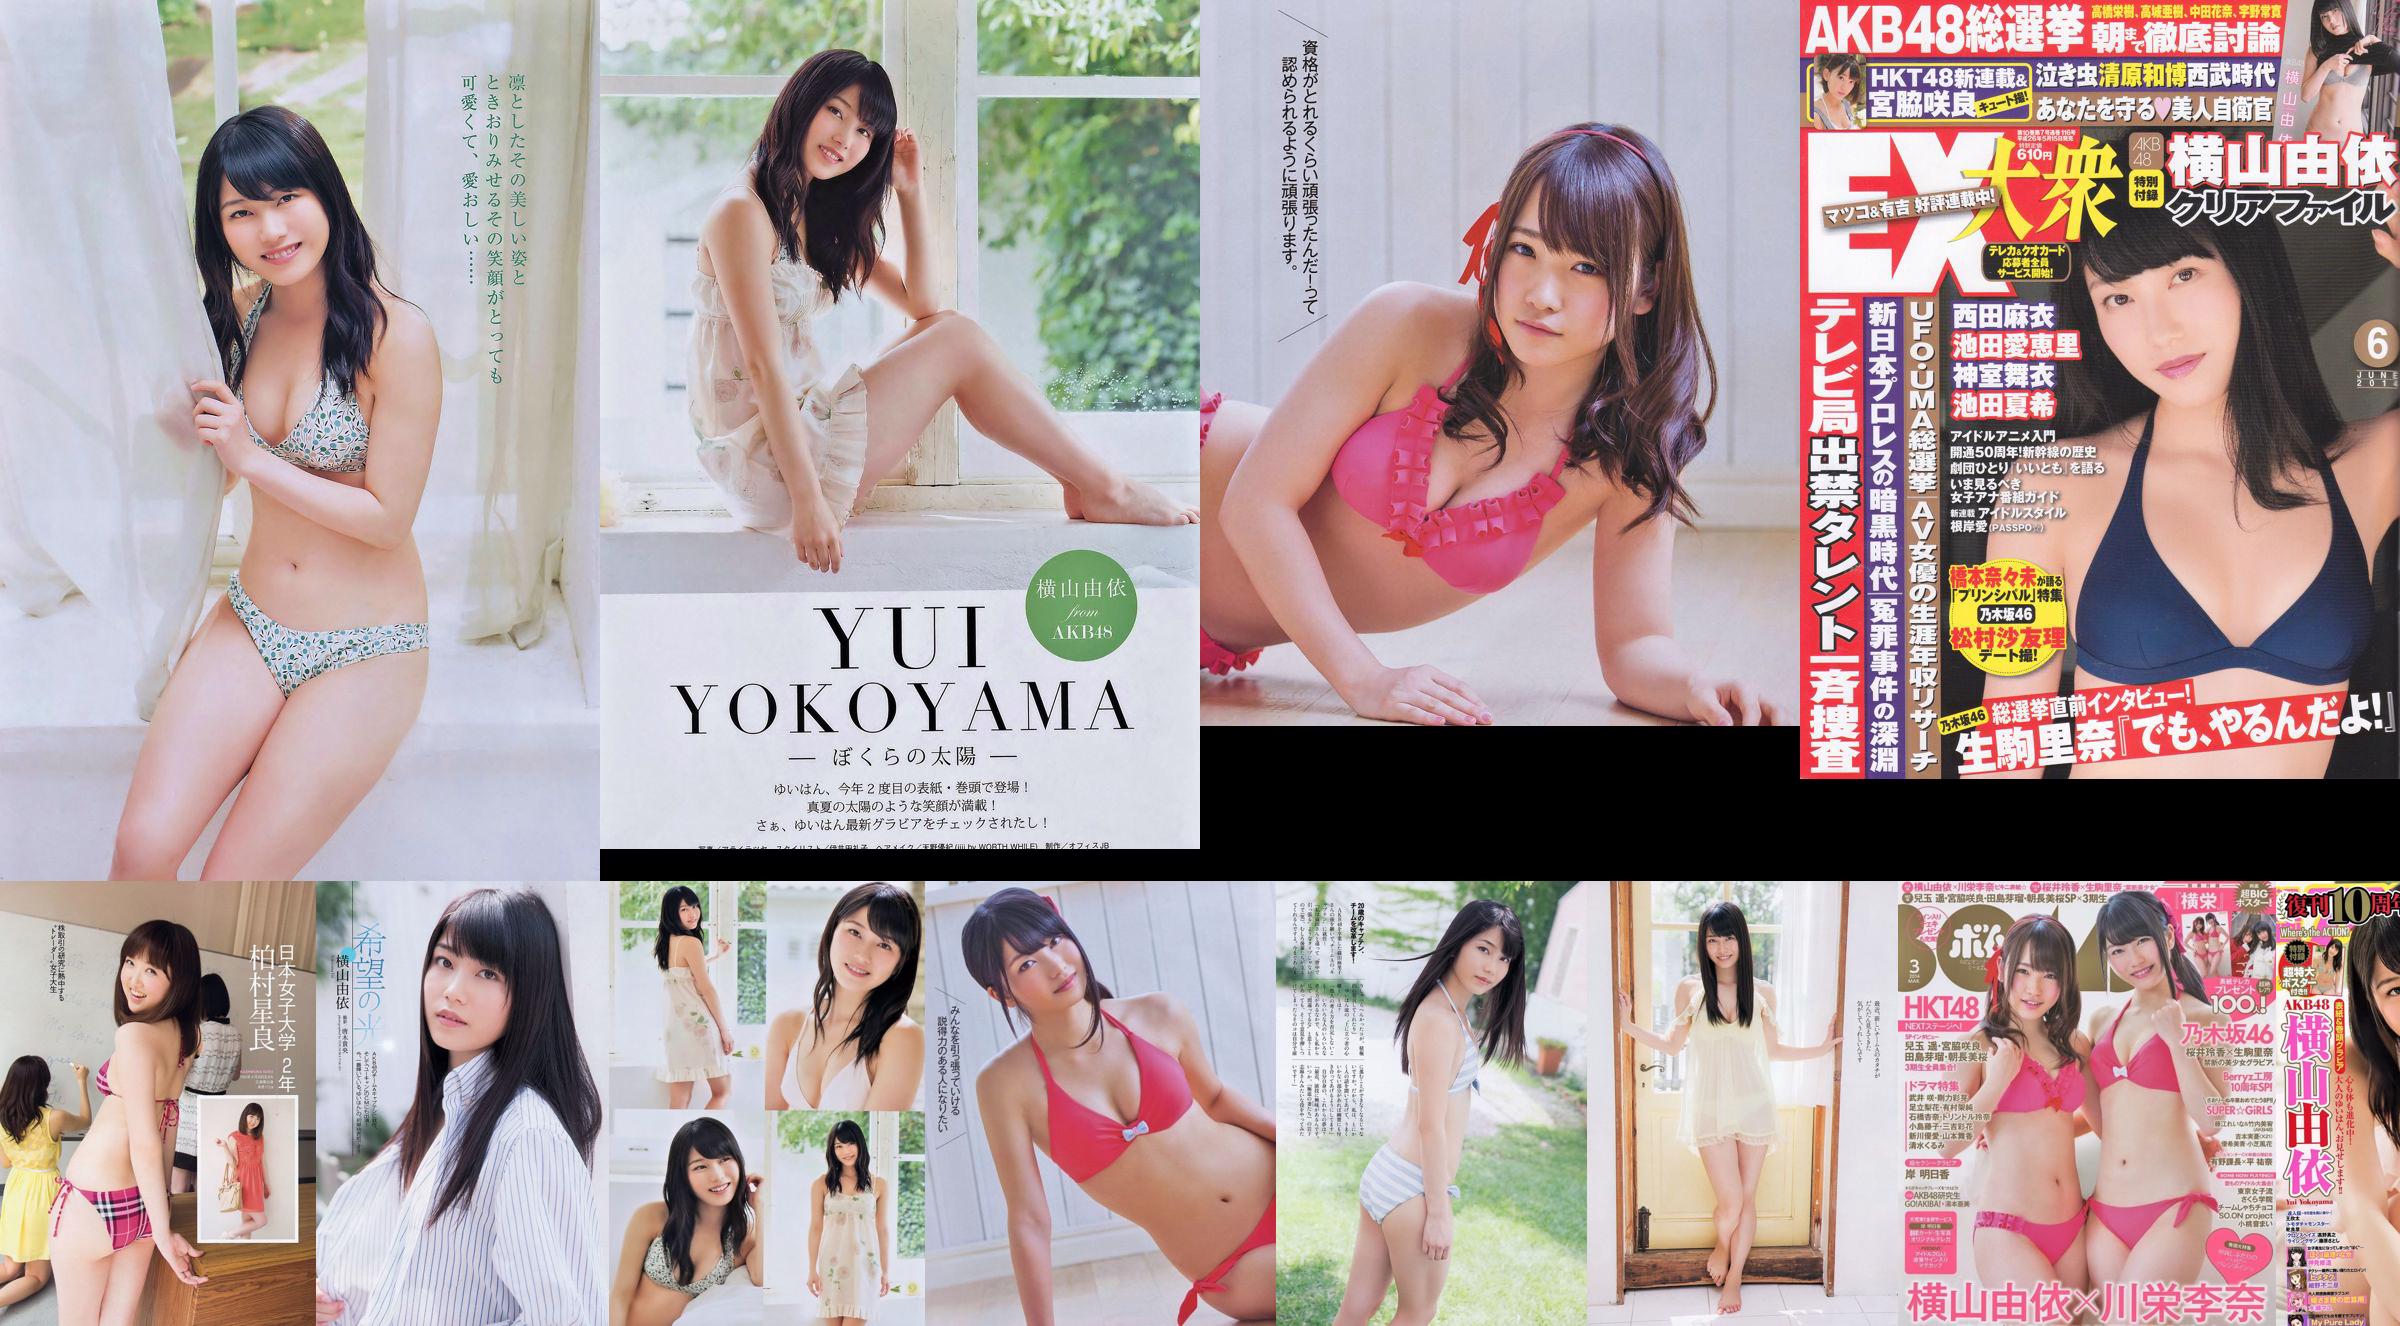 [Bomb Magazine] 2014 No.03 Yui Yokoyama Rina Kawaei Foto: No.db86f5 Pagina 1